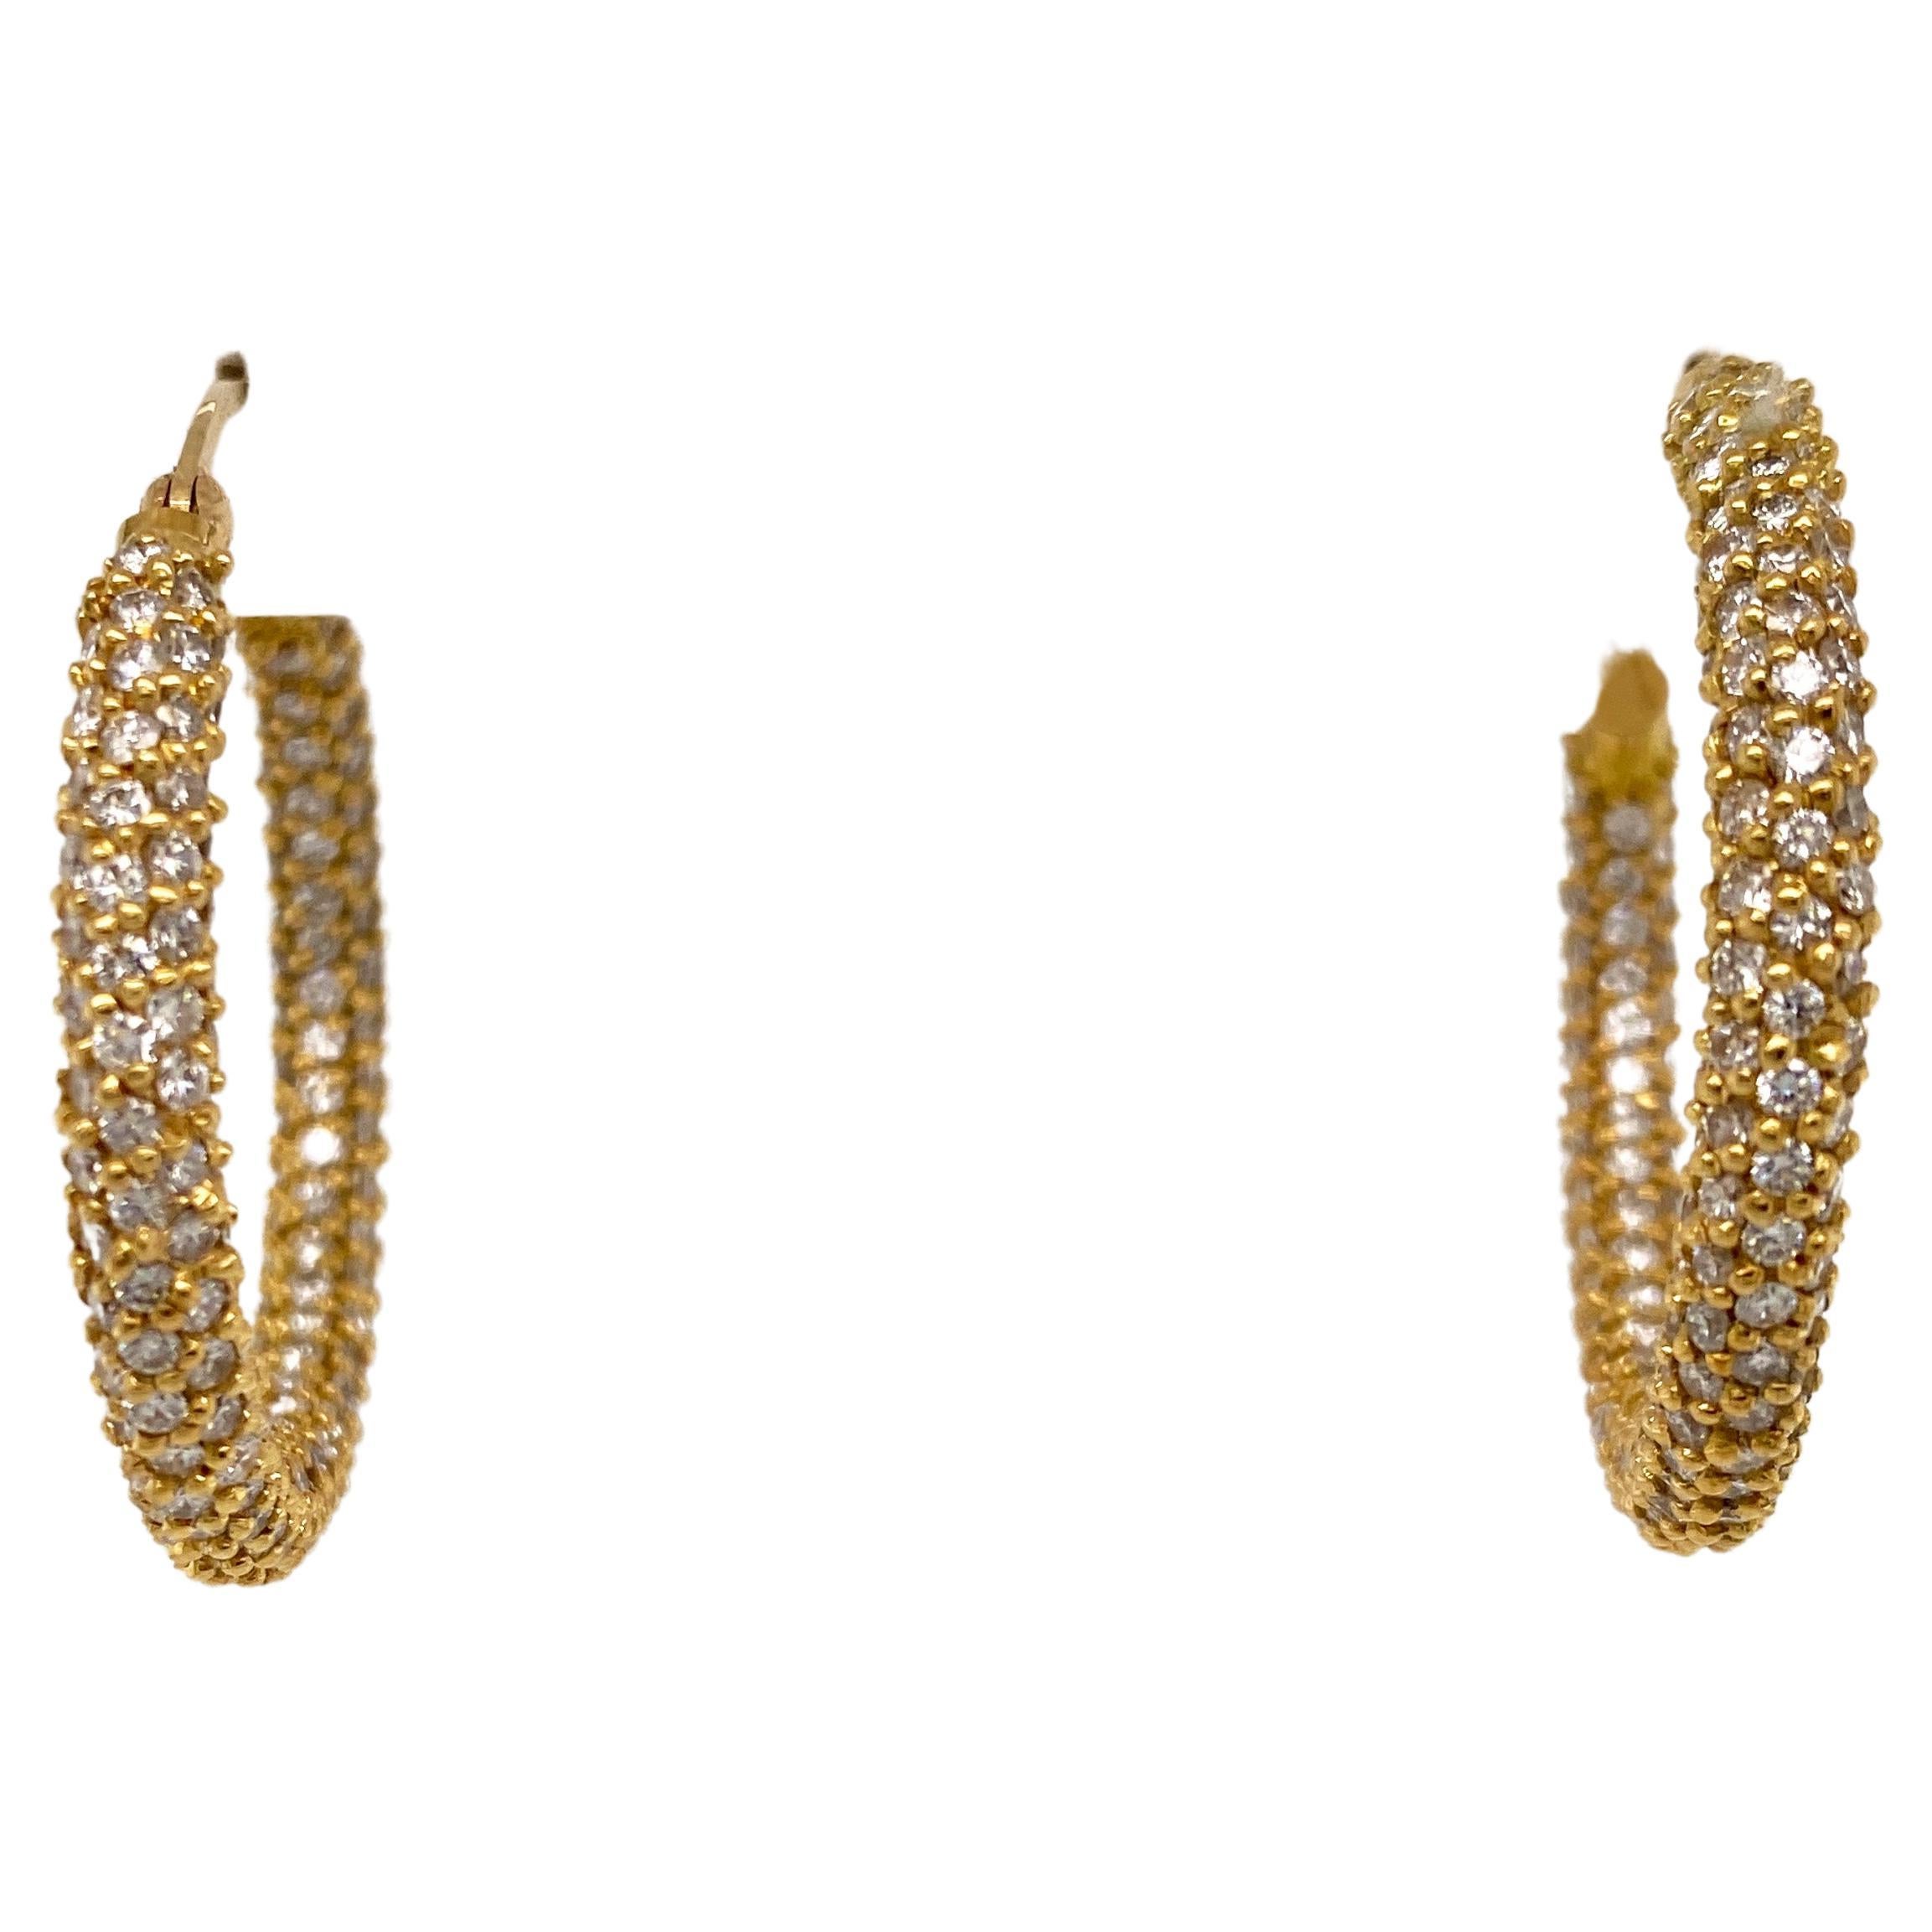 1.00 Carat Diamond Pavé Hoop Earrings in 14k Yellow Gold